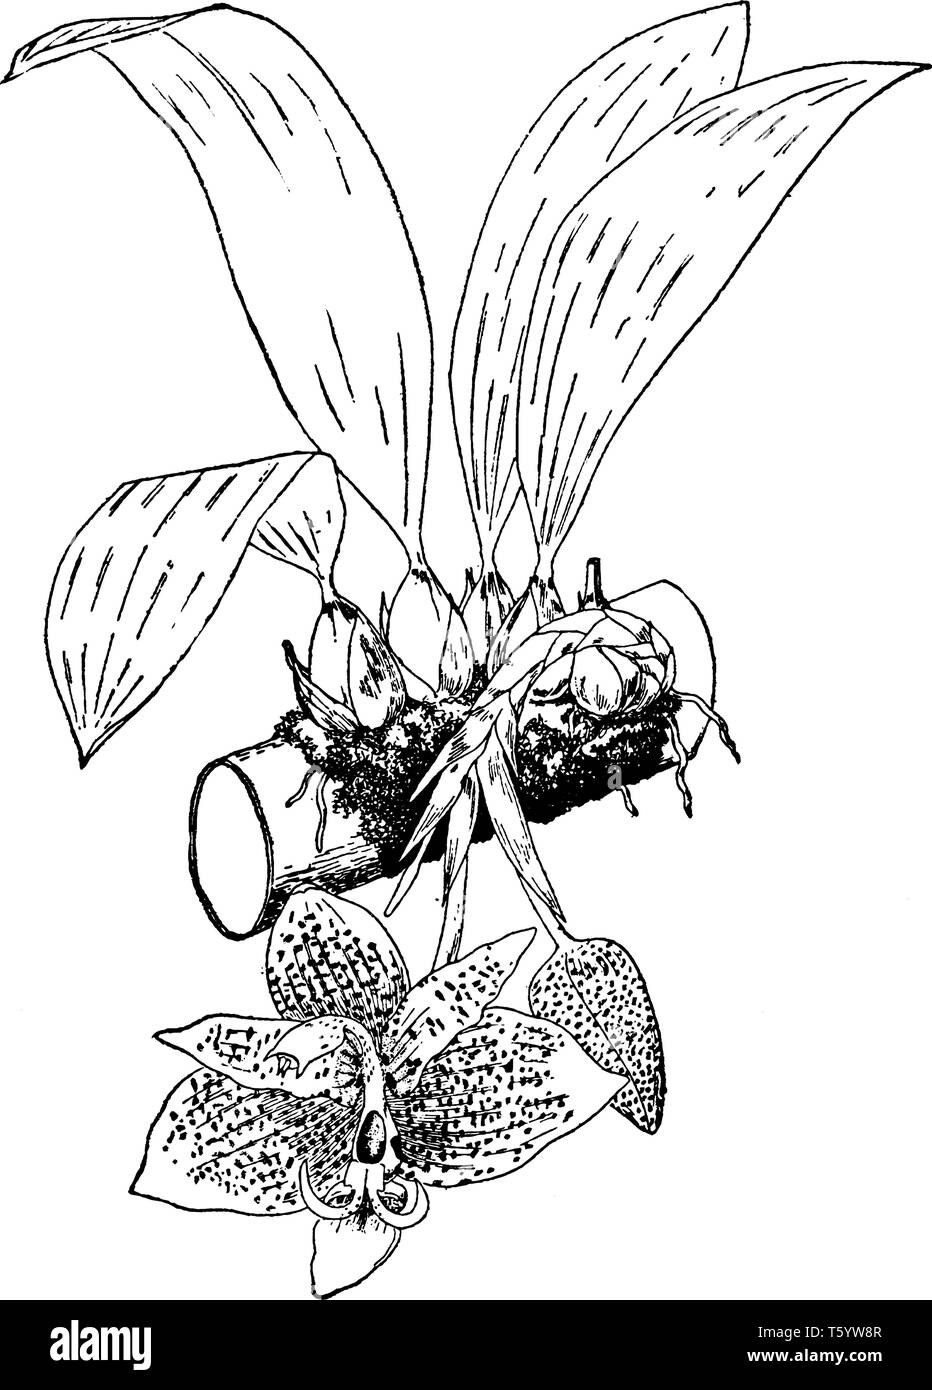 Stanhopea oculata est une espèce d'orchidée, voit habituellement dans le sud-est du Brésil. Les fleurs sont de taille moyenne, large, et il y a beaucoup de f Illustration de Vecteur